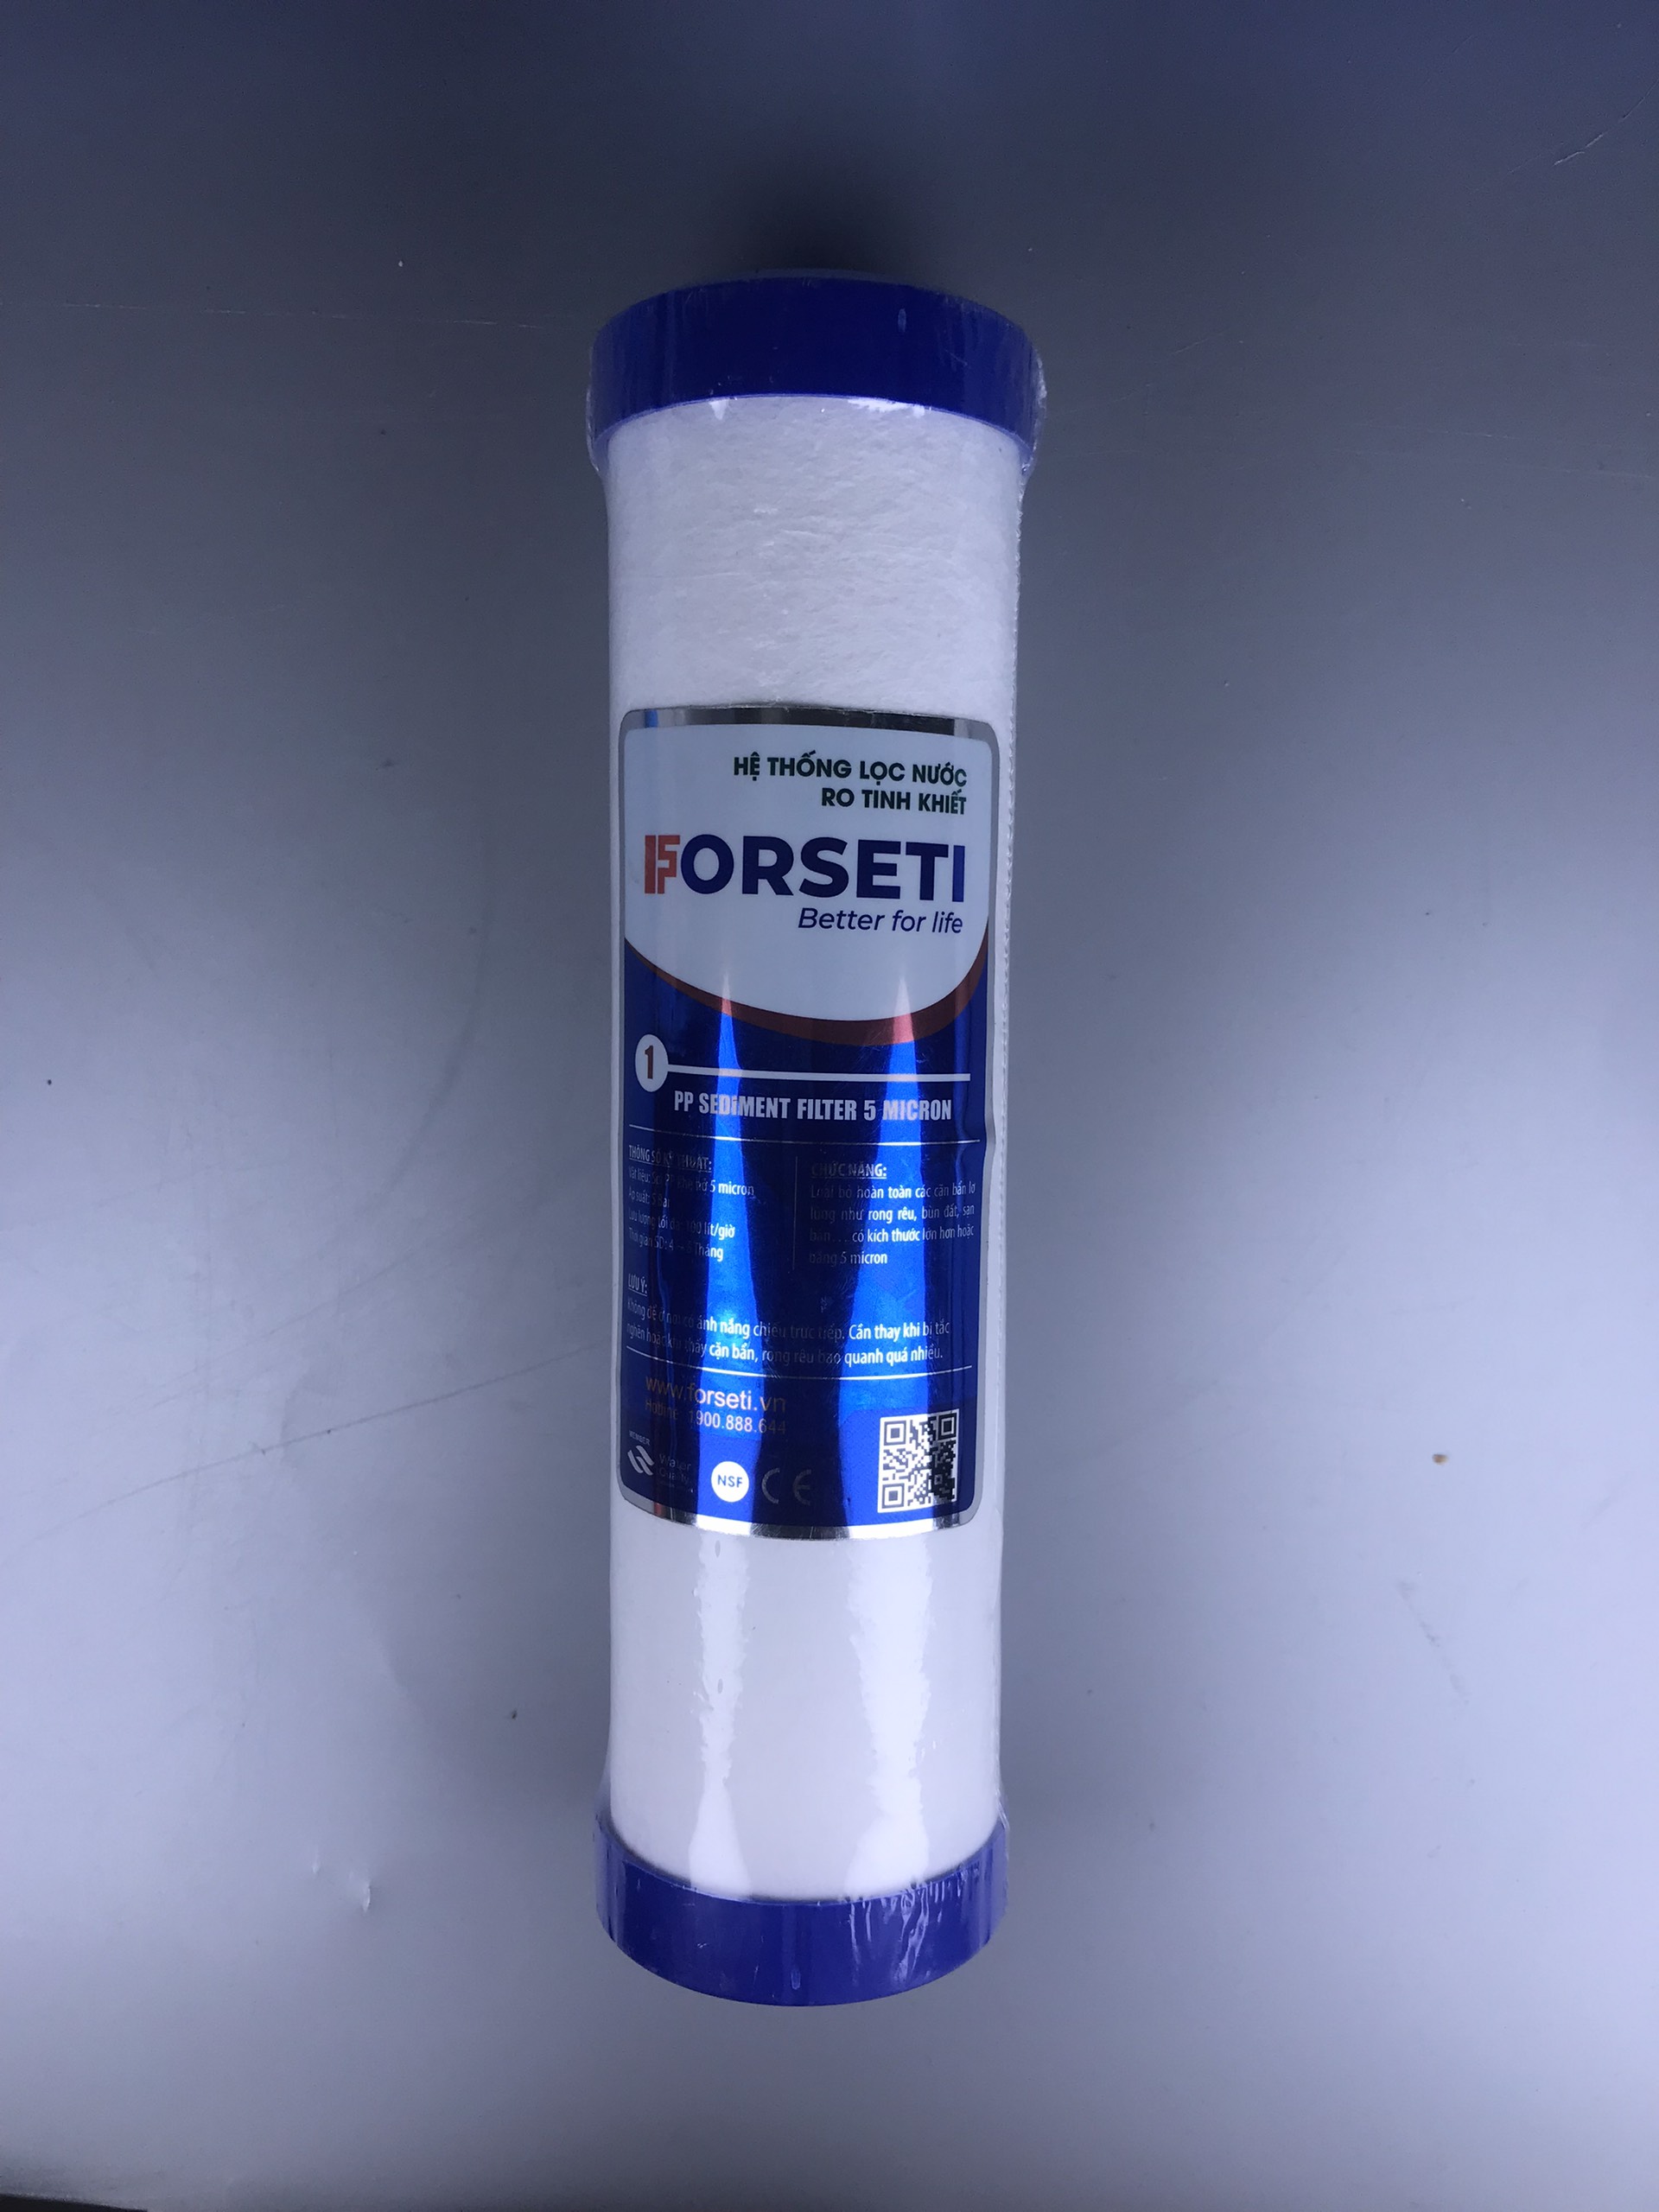 Bộ 3 lõi lọc thô Forseti lõi số 1 - 2 - 3 lọc sạch tạp chất có kích thước từ 1 micron, bảo vệ màng RO - Hàng chính hãng